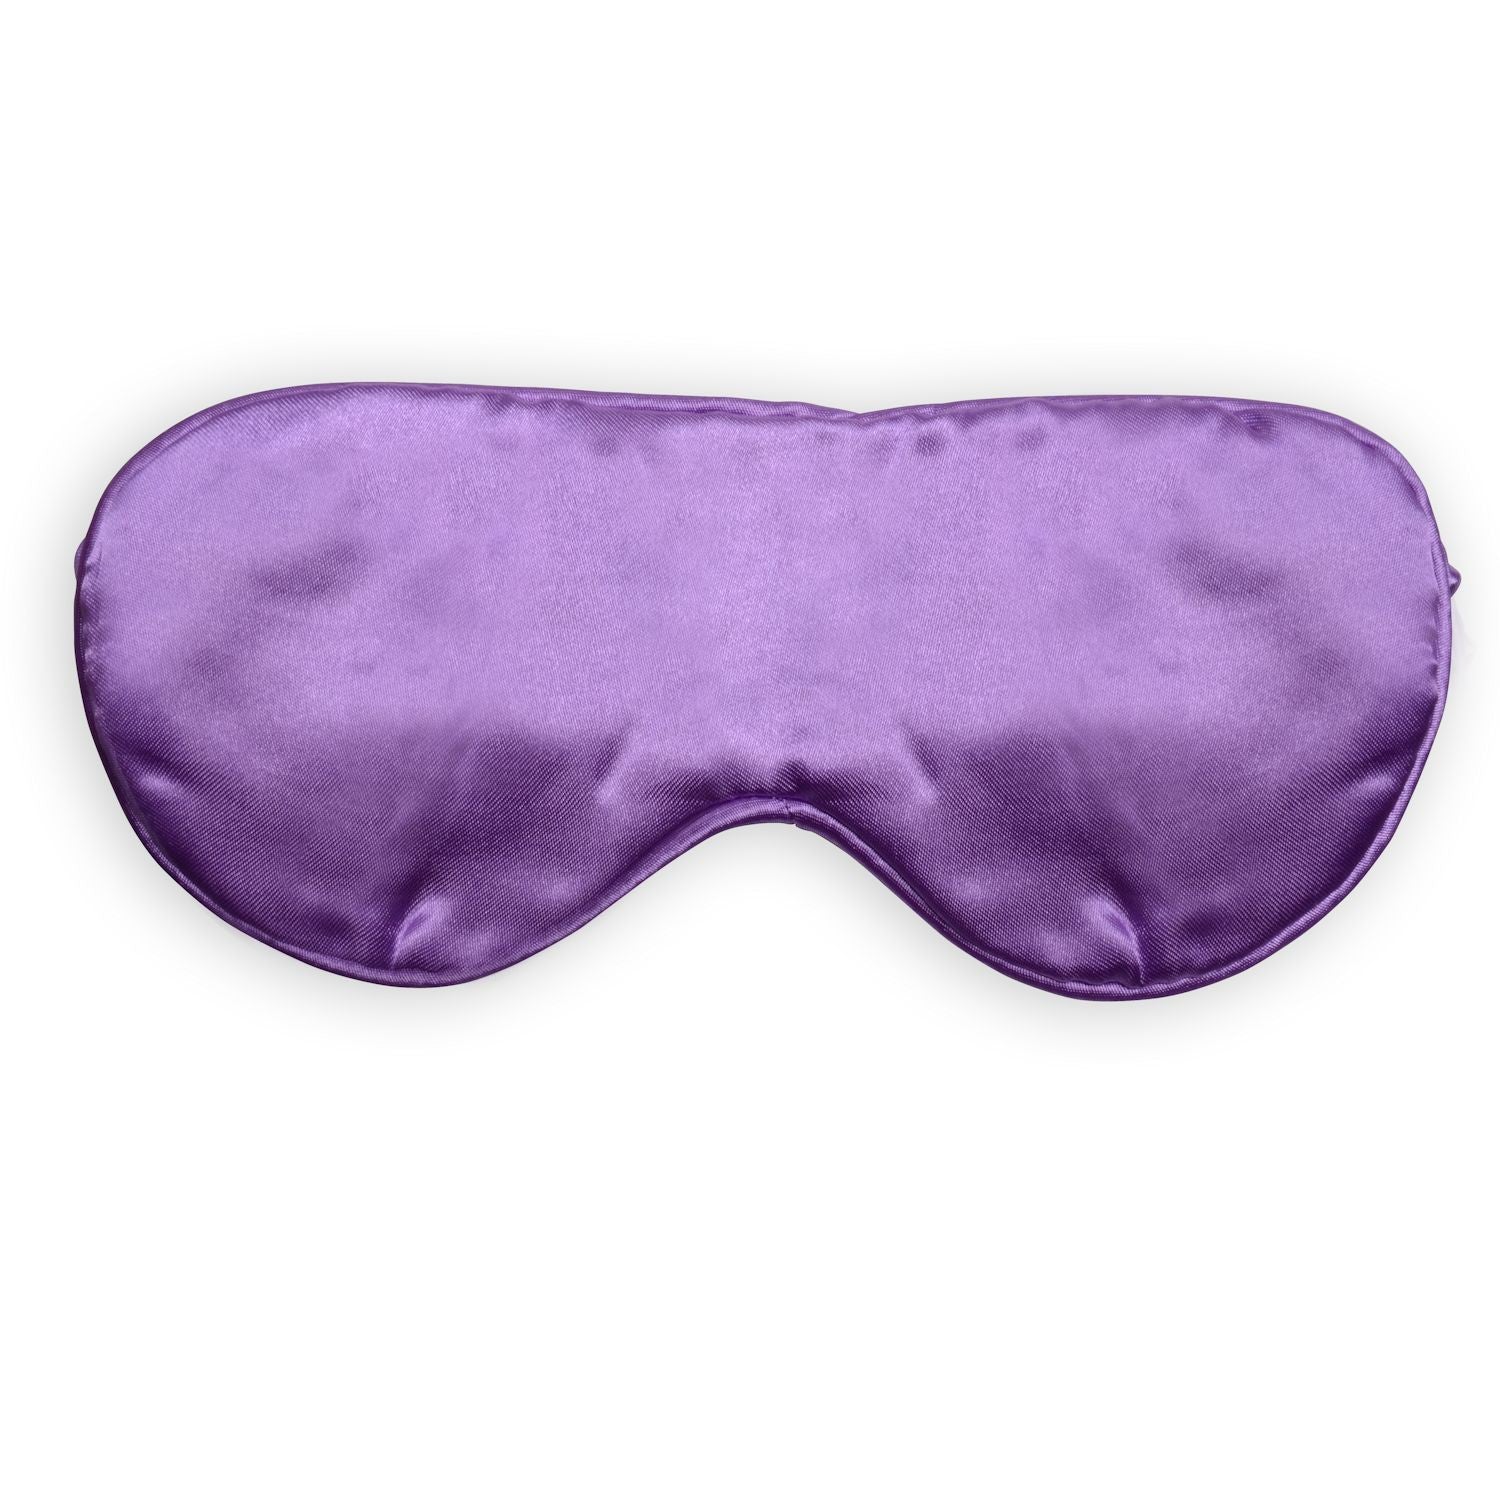 Zhu-Zhu Silk Lavender Eye Mask - Purple